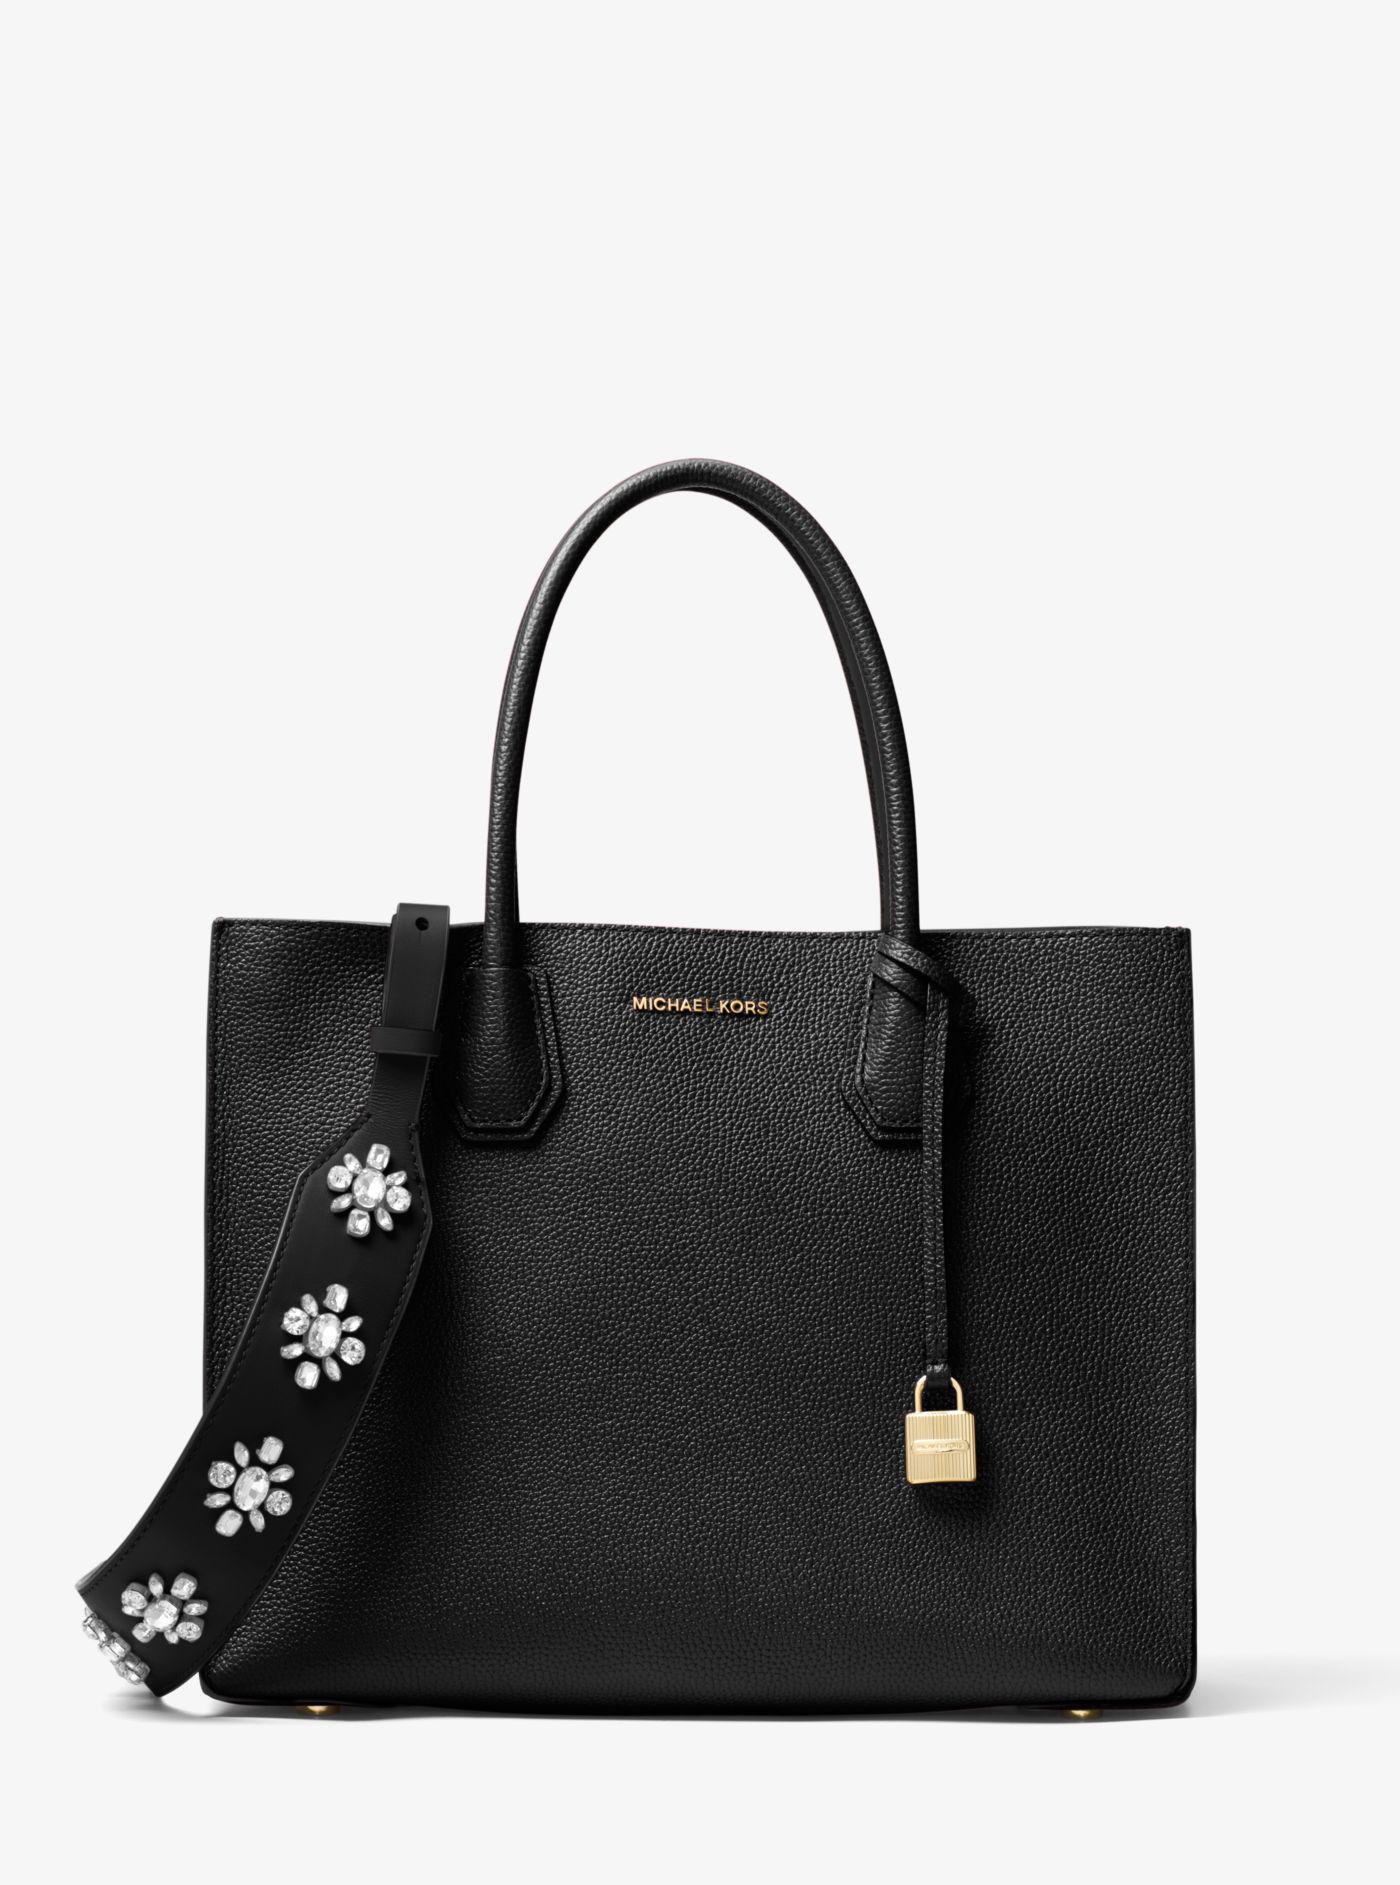 Michael Kors Floral-embellished Leather Handbag Strap in Black - Lyst